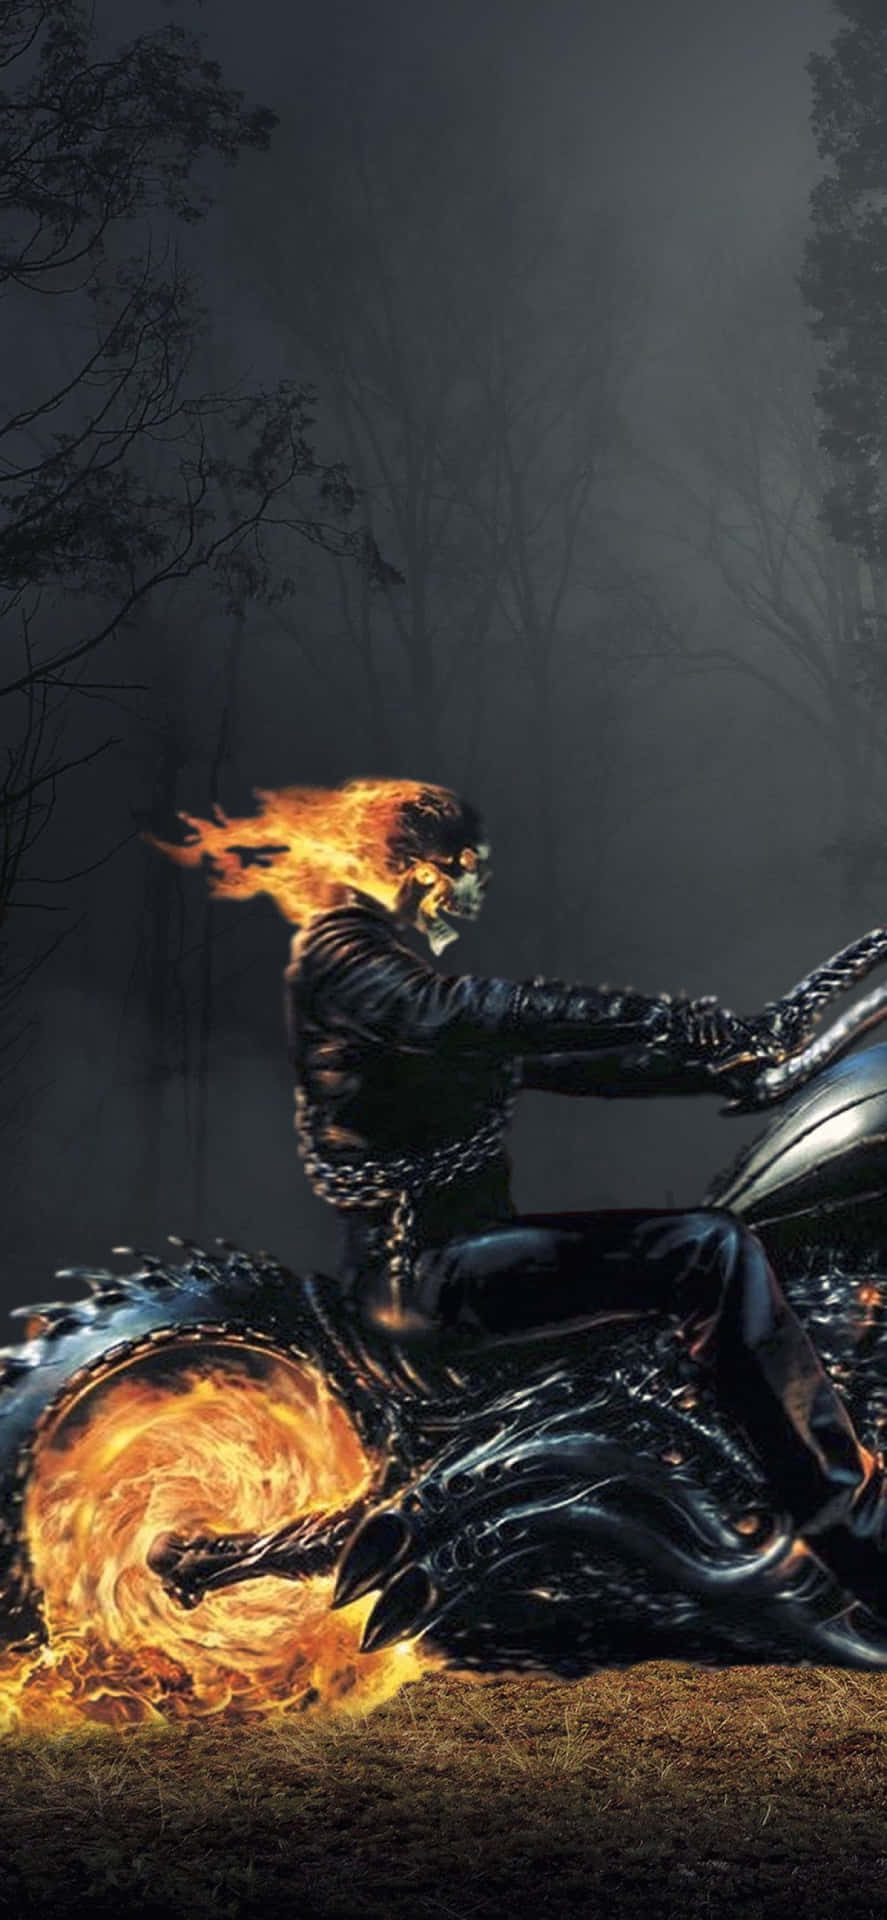 Scoprinuove Strade Con Il Leggendario Ghost Rider!